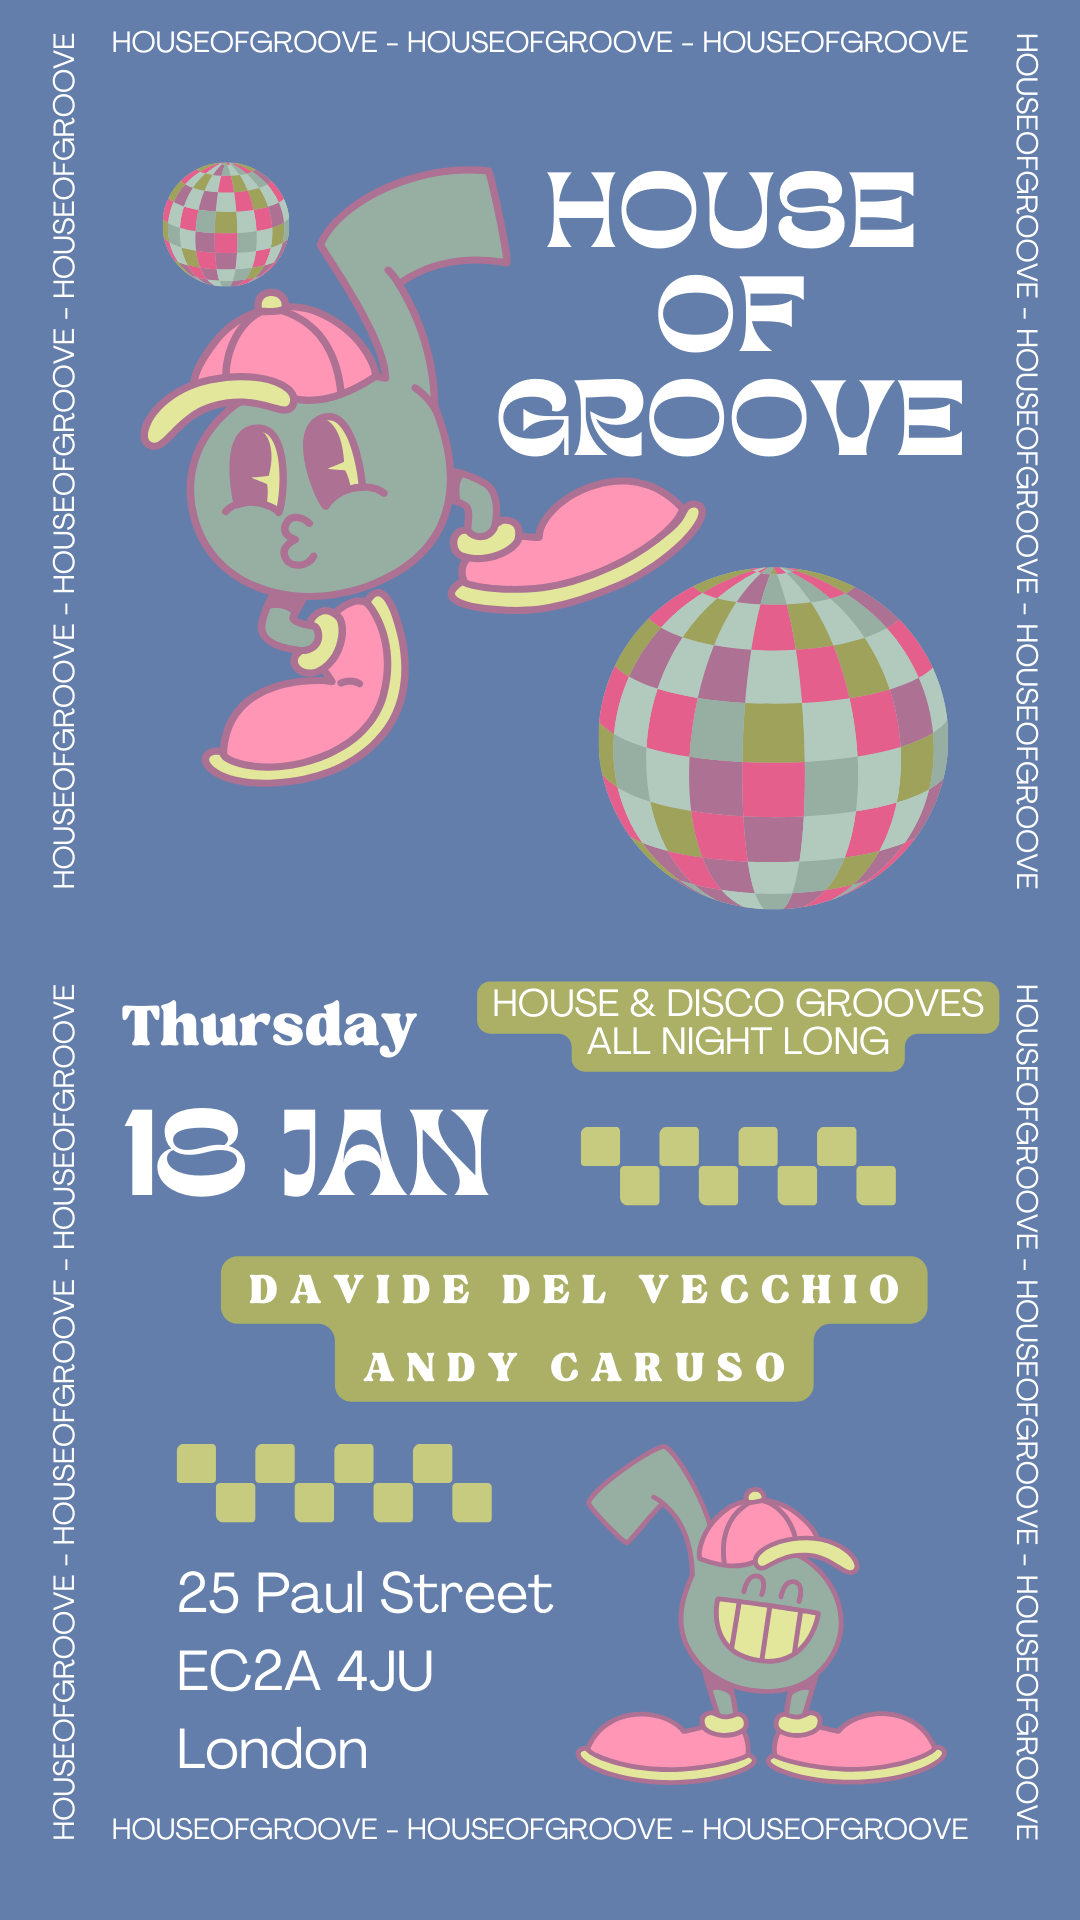 HOUSE OF GROOVE - Davide Del Vecchio invites - フライヤー表